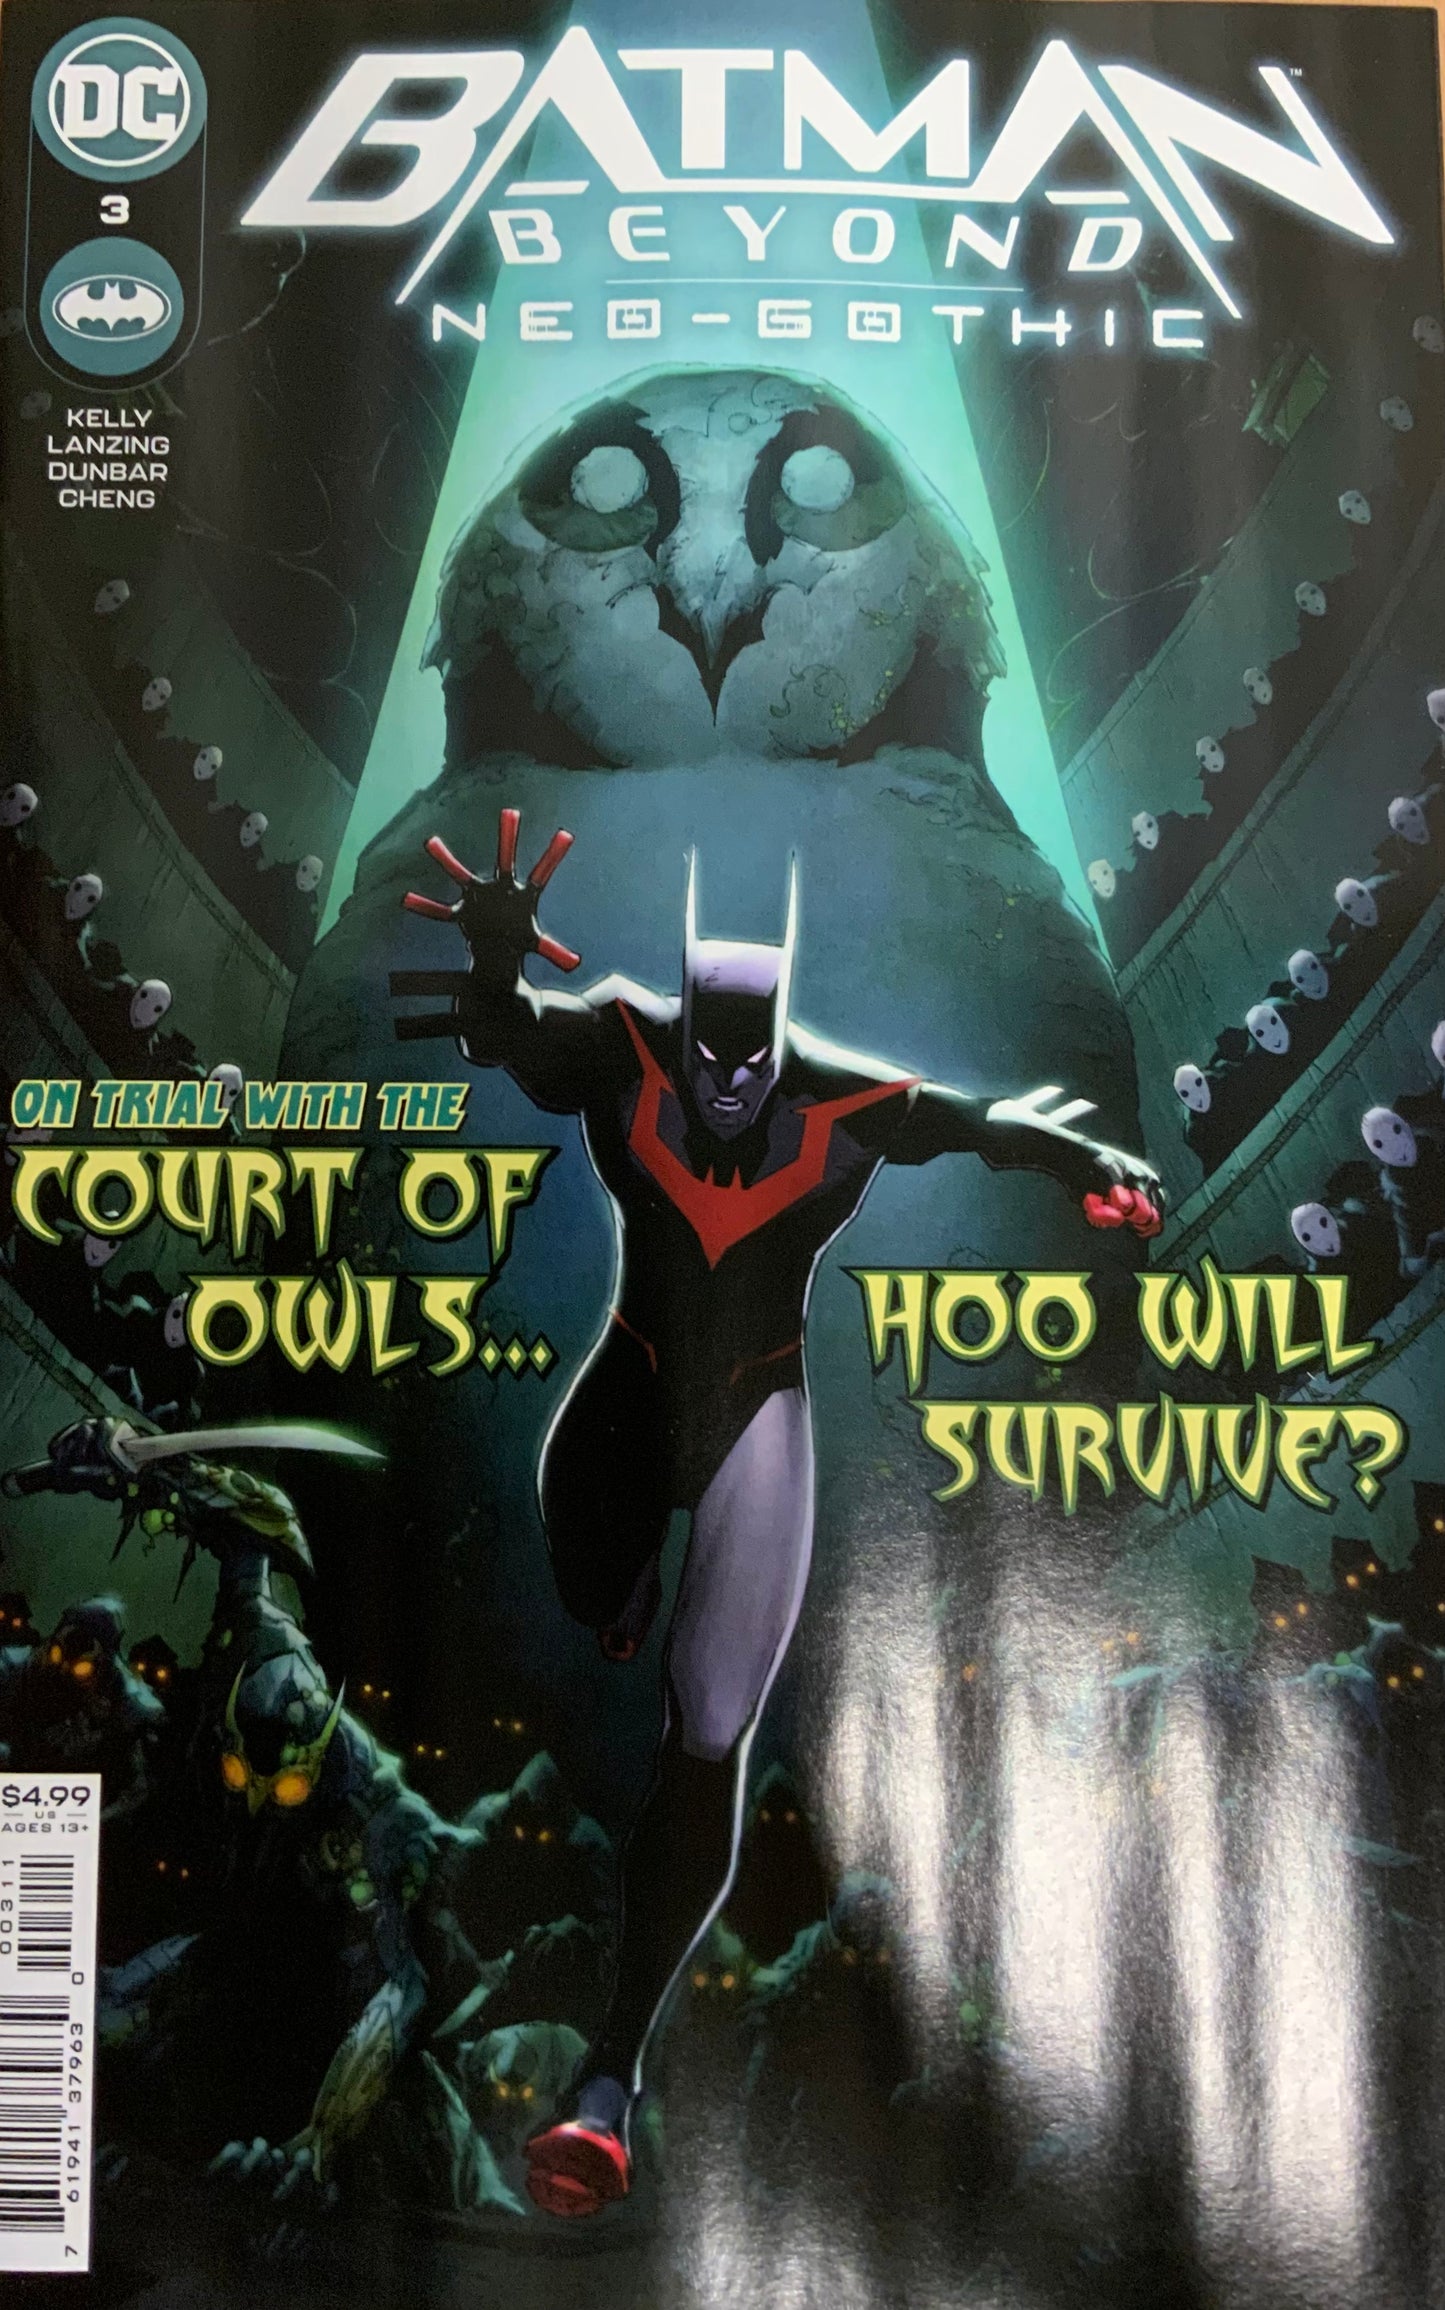 Batman Beyond: Neo-Gothic issue 3